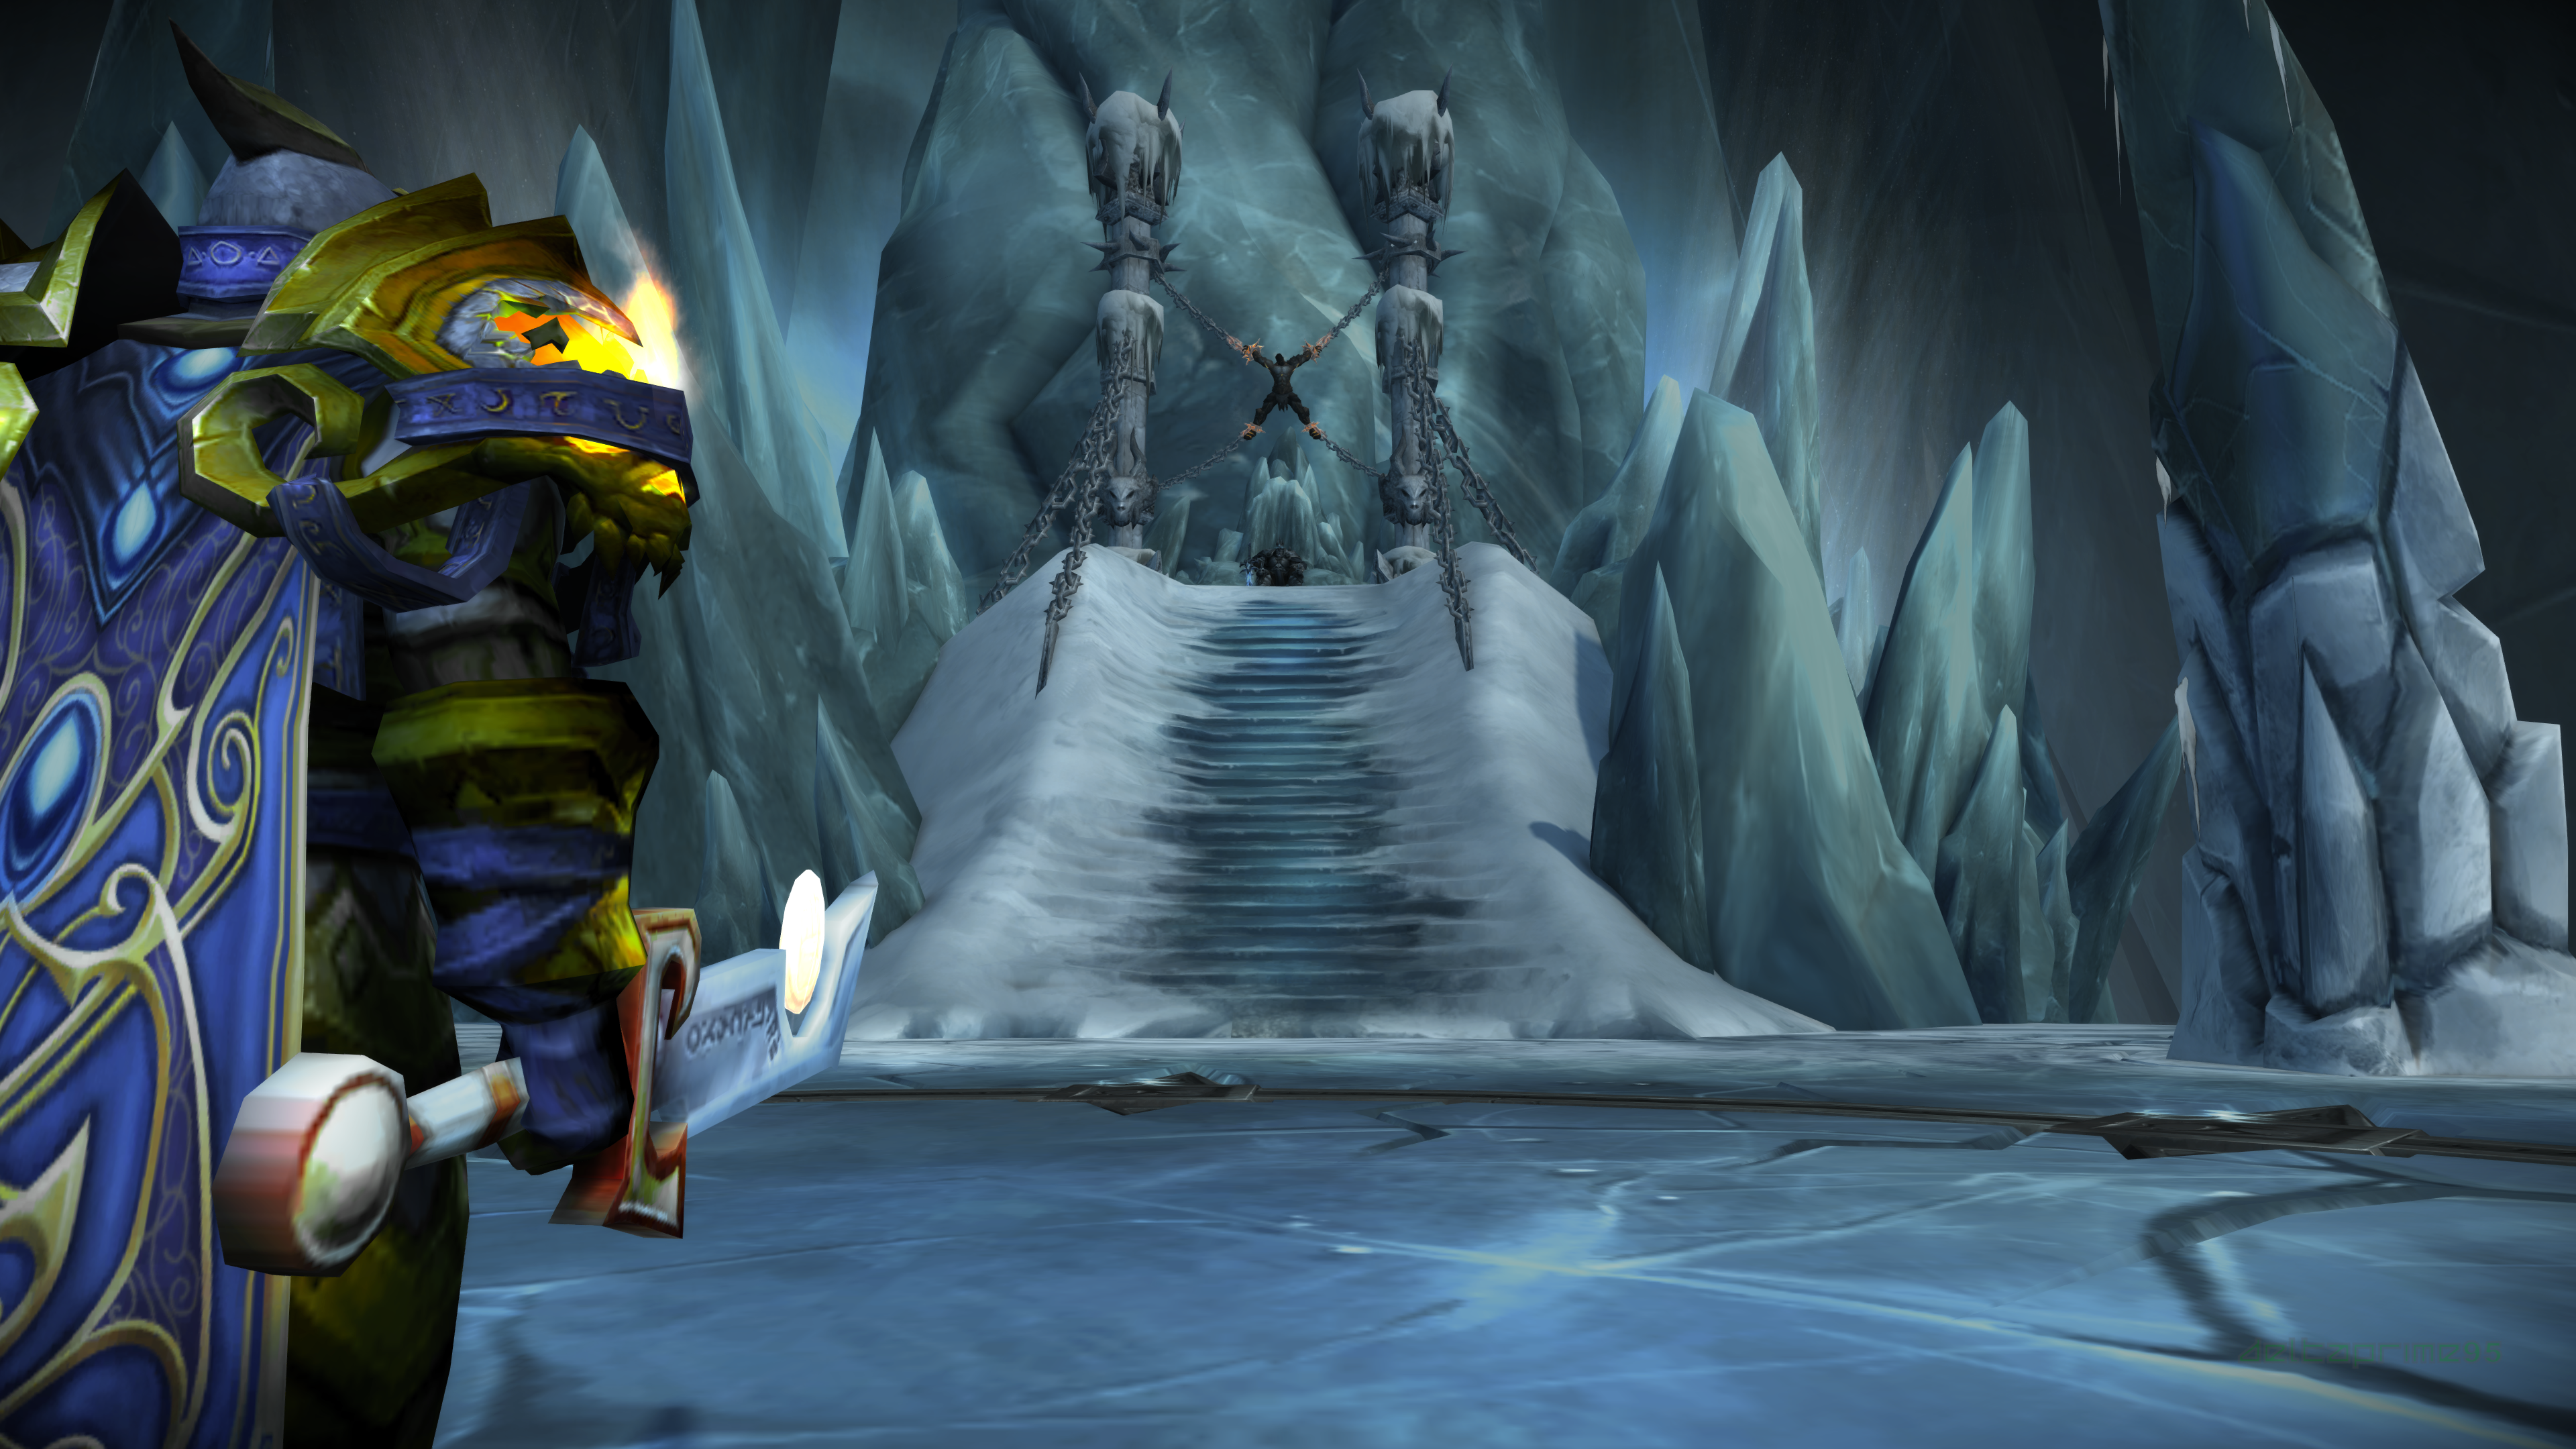 World Of Warcraft Wrath Of The Lich King Arthas Menethil Arthas Bolvar Fordragon Icecrown Citadel Th 3840x2160